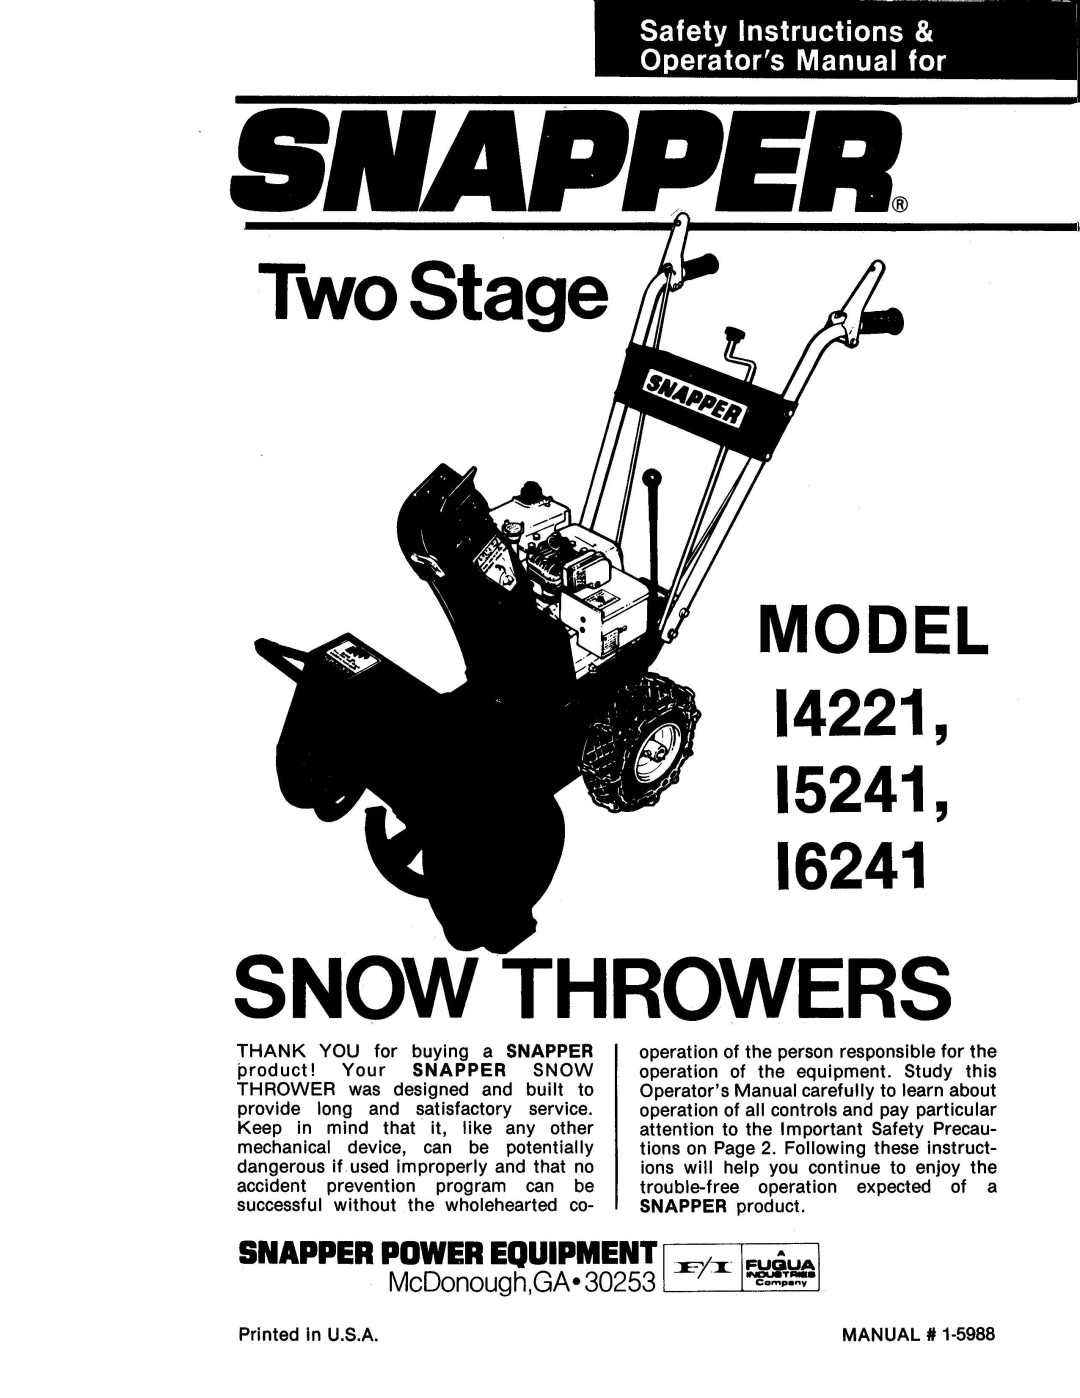 Snapper I4221, I6241, I5241 manual 